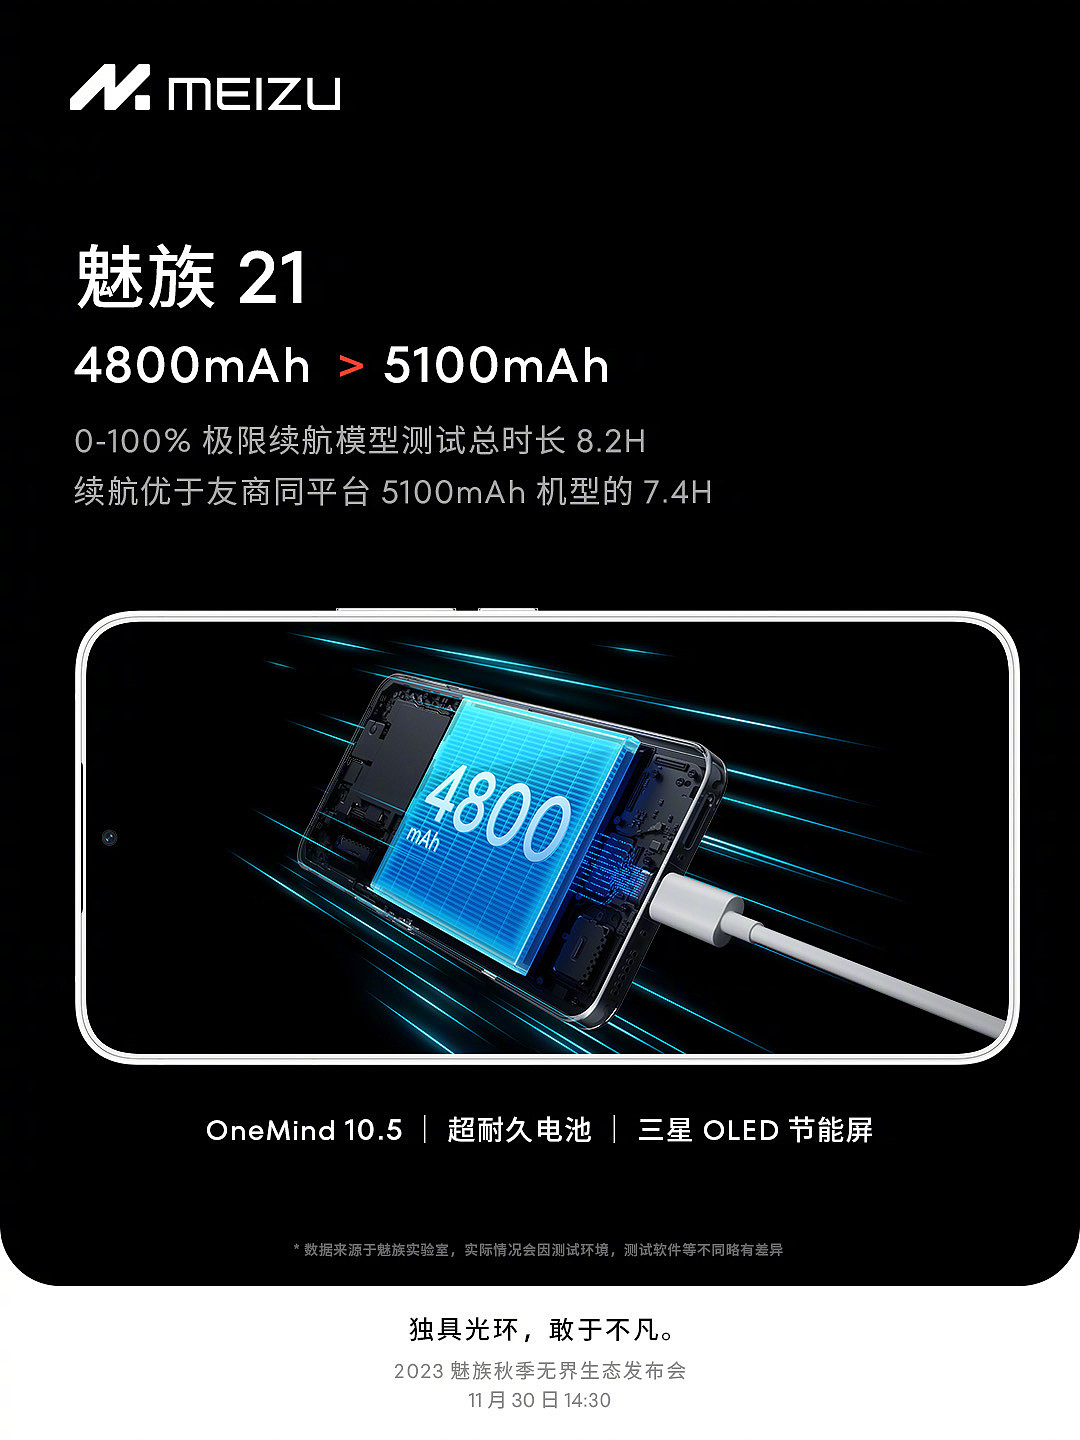 魅族 21 手机预热：内置 4800mAh 电池，称“配合 OneMind 10.5 + 三星 OLED 屏 > 5100mAh” - 1